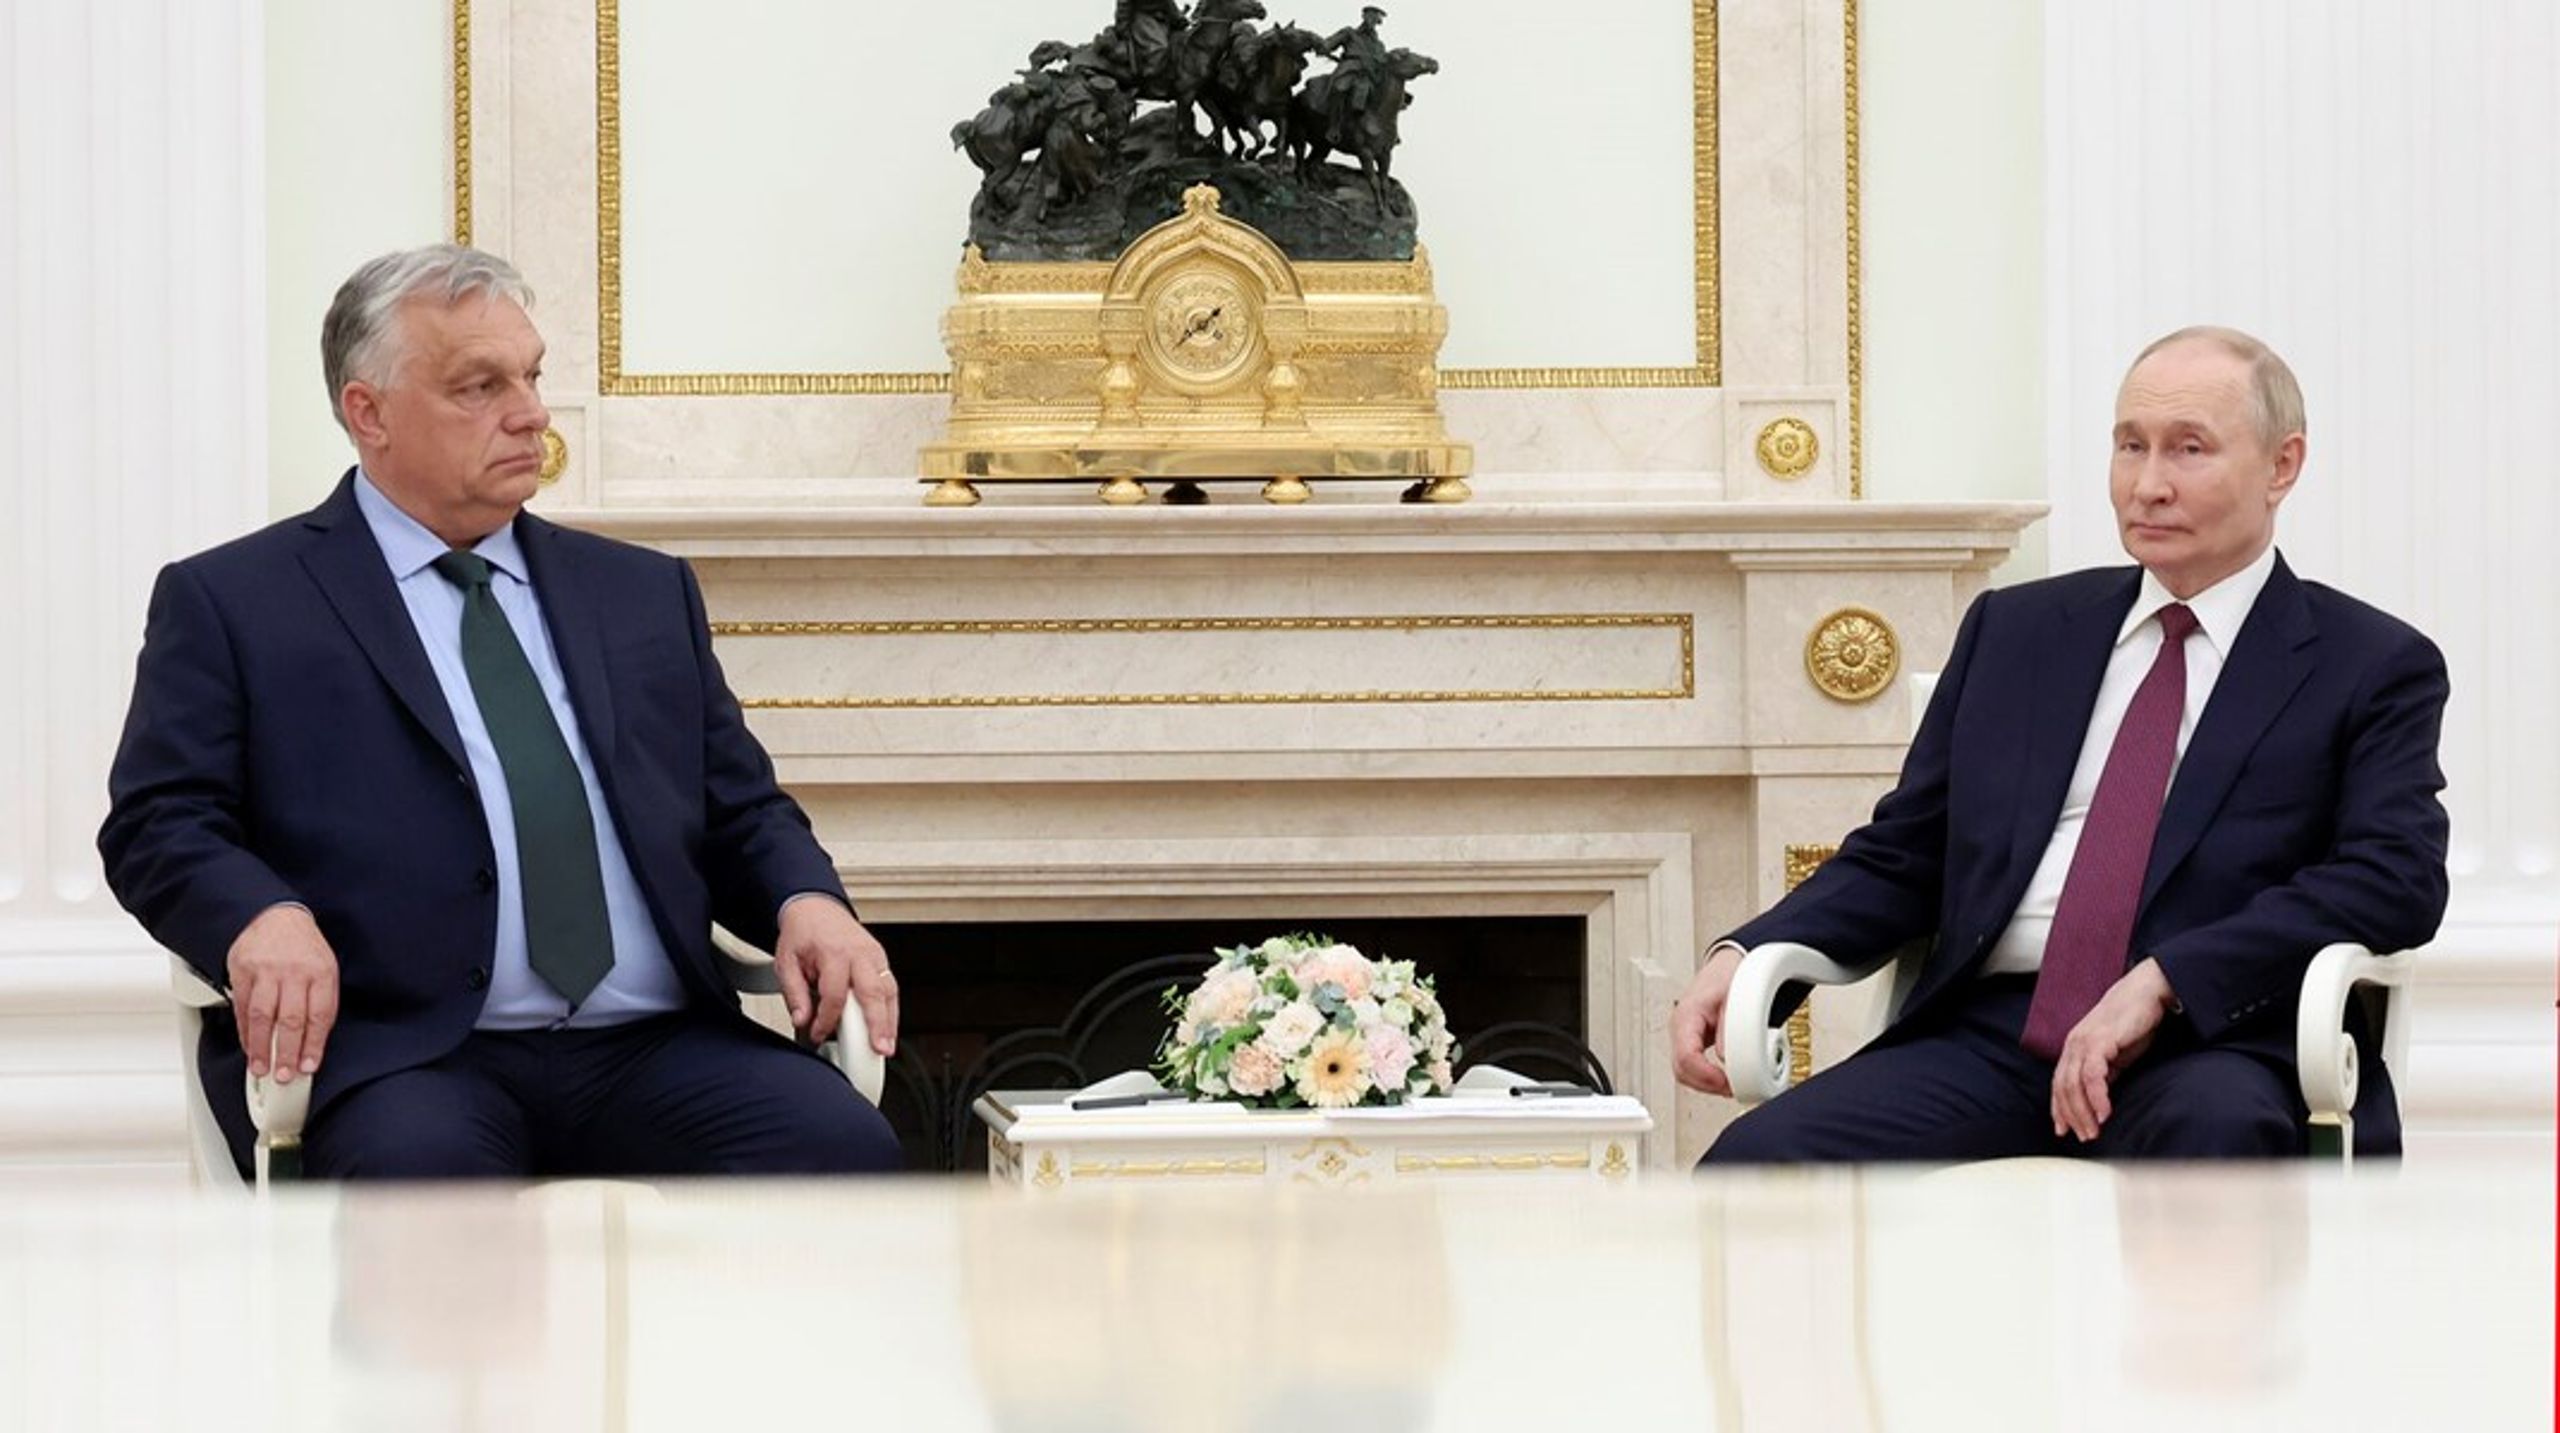 Efter Ungarns premierminister Viktor Orbán besøgte Ruslands præsident Vladimir Putin, melder udenrigsminister Lars Løkke Rasmussen (M) nu, at man ikke længere vil sende ministre til uformelle ministermøder i Ungarn.